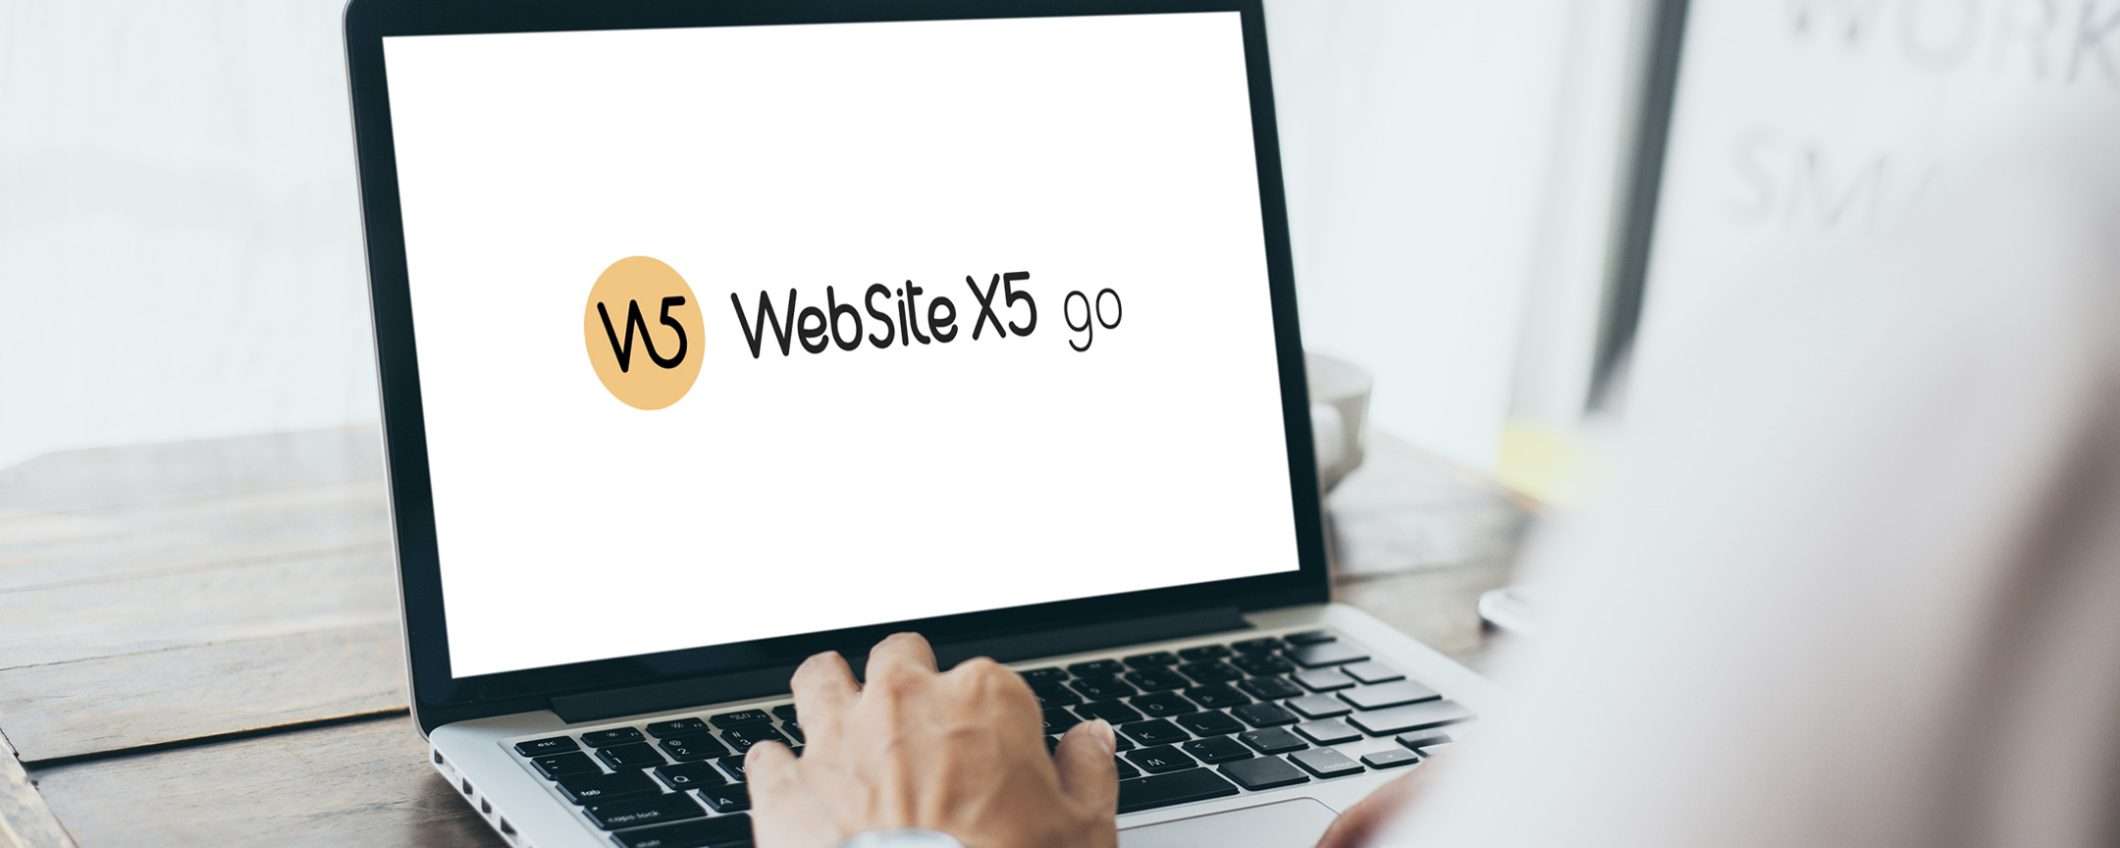 WebSite X5 Pro: la soluzione completa per creare il tuo sito web o e-commerce